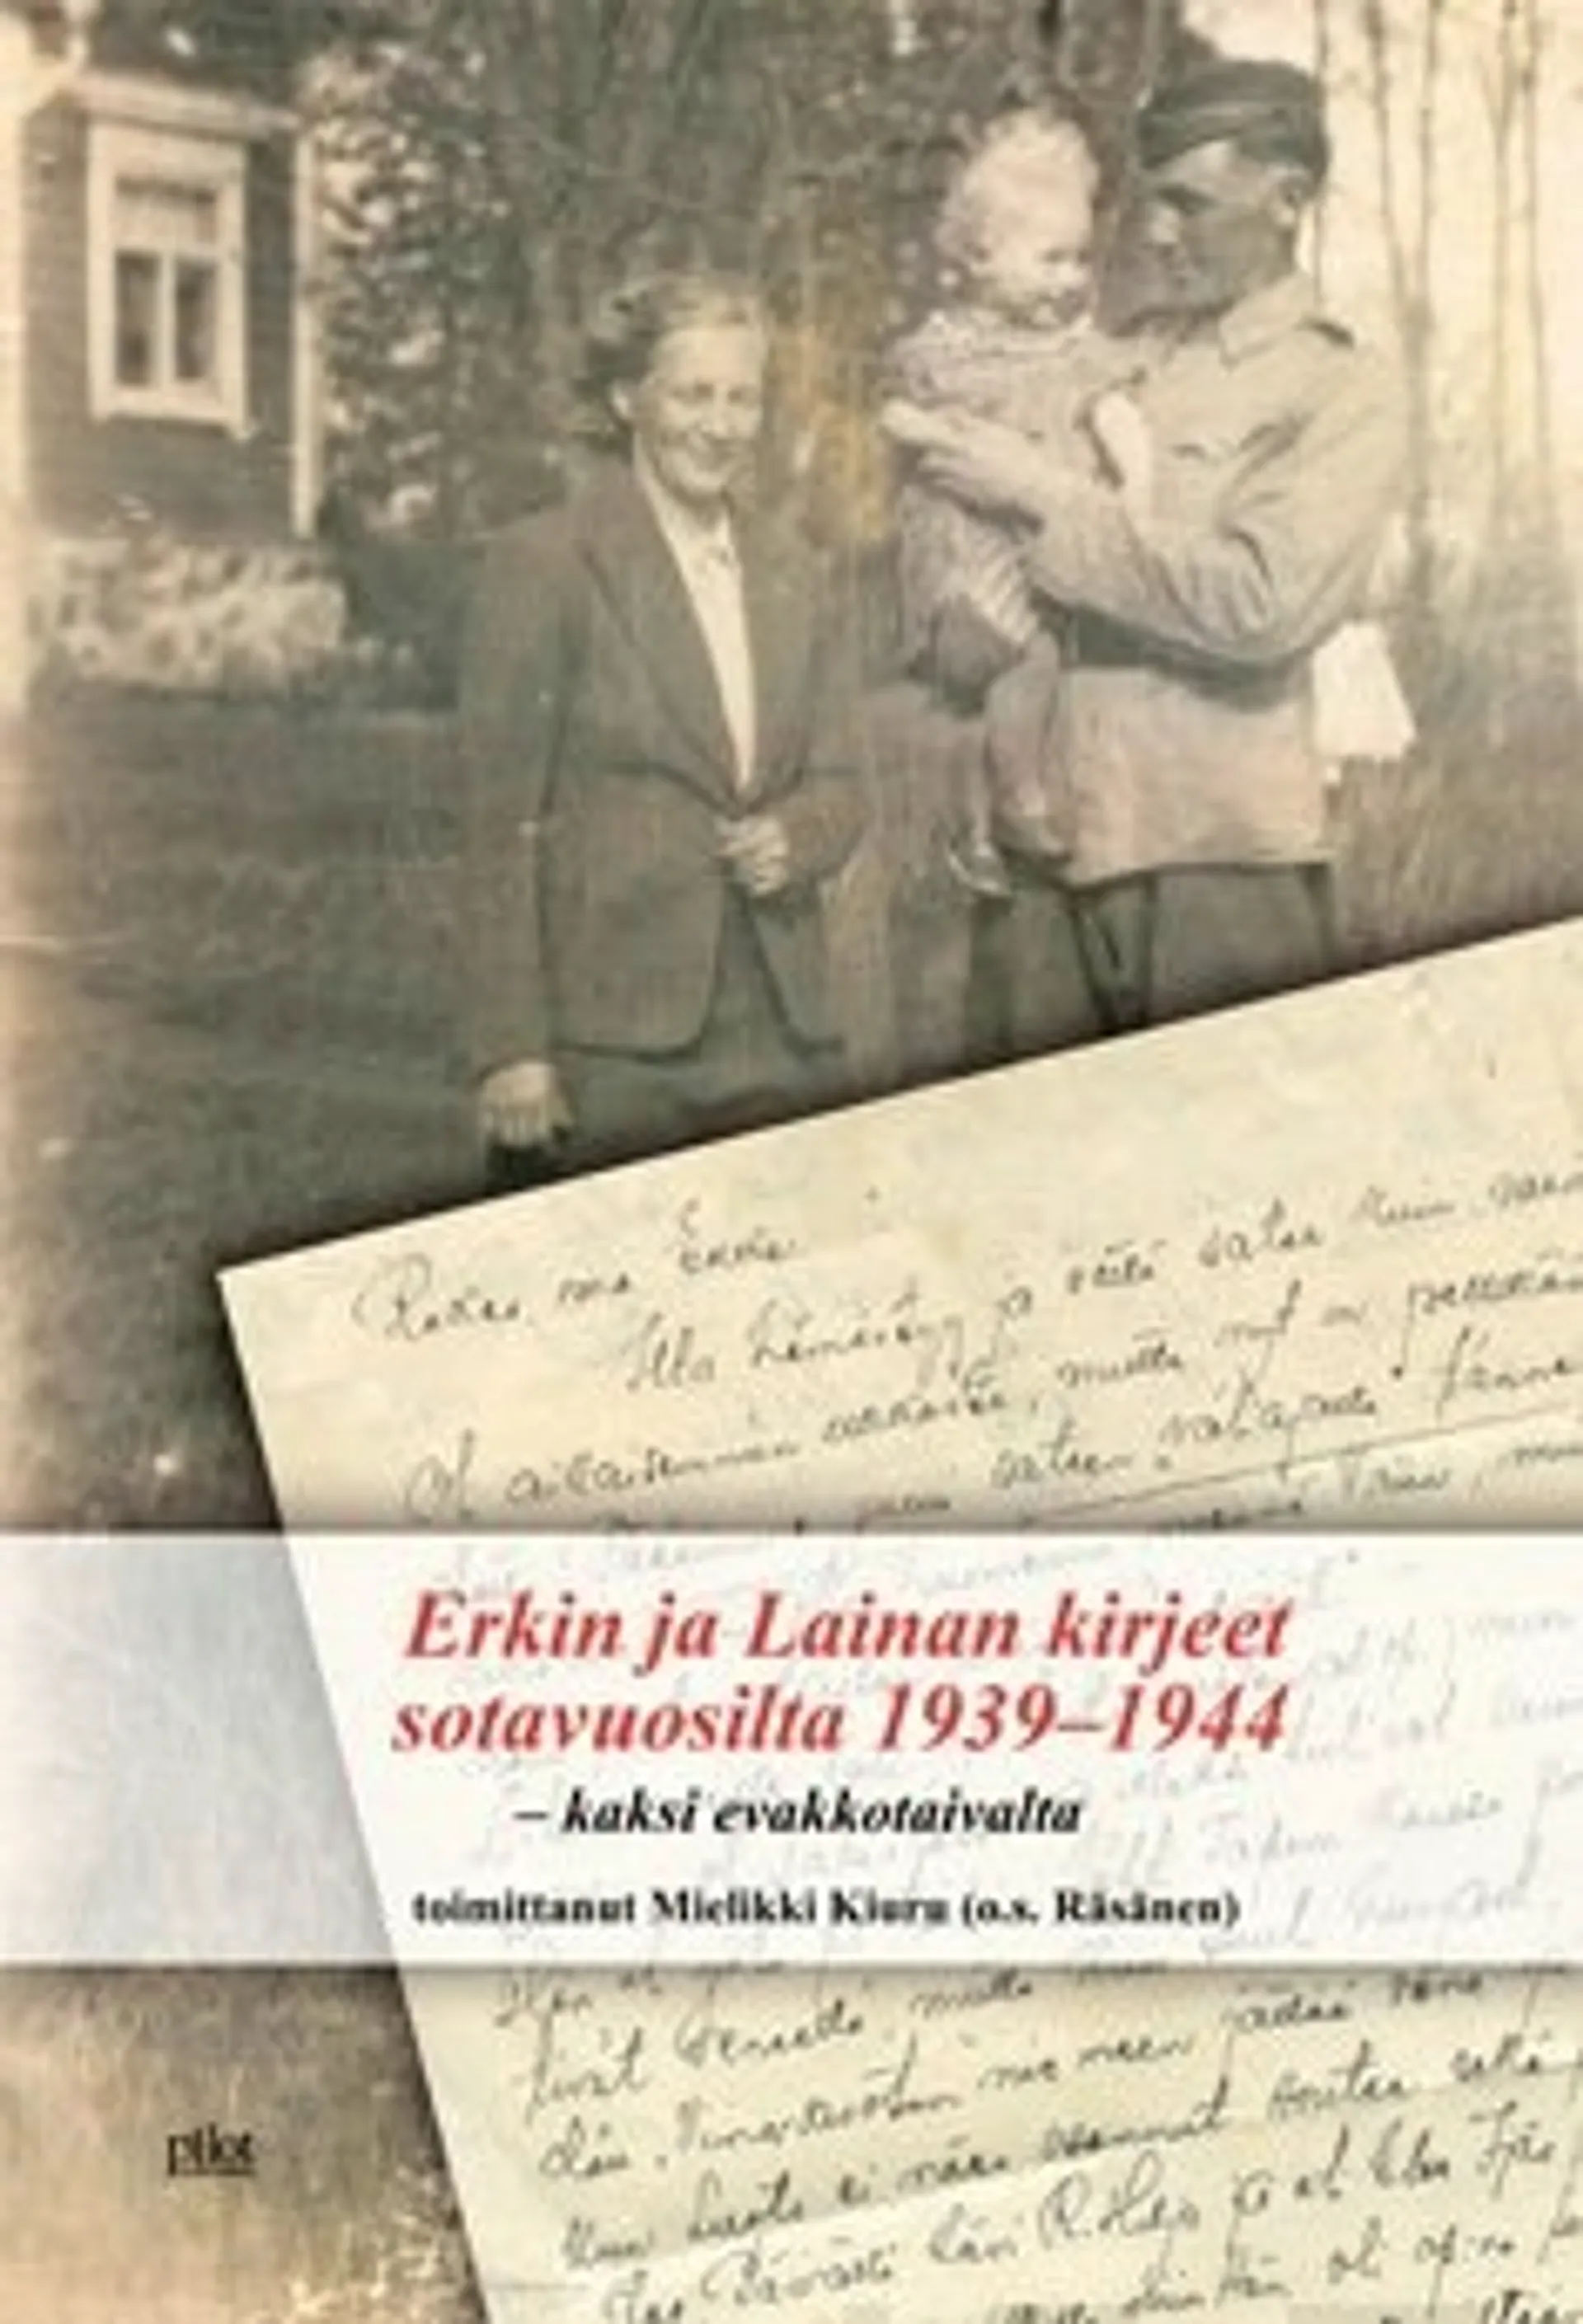 Erkin ja Lainan kirjeet sotavuosilta 1939-1944